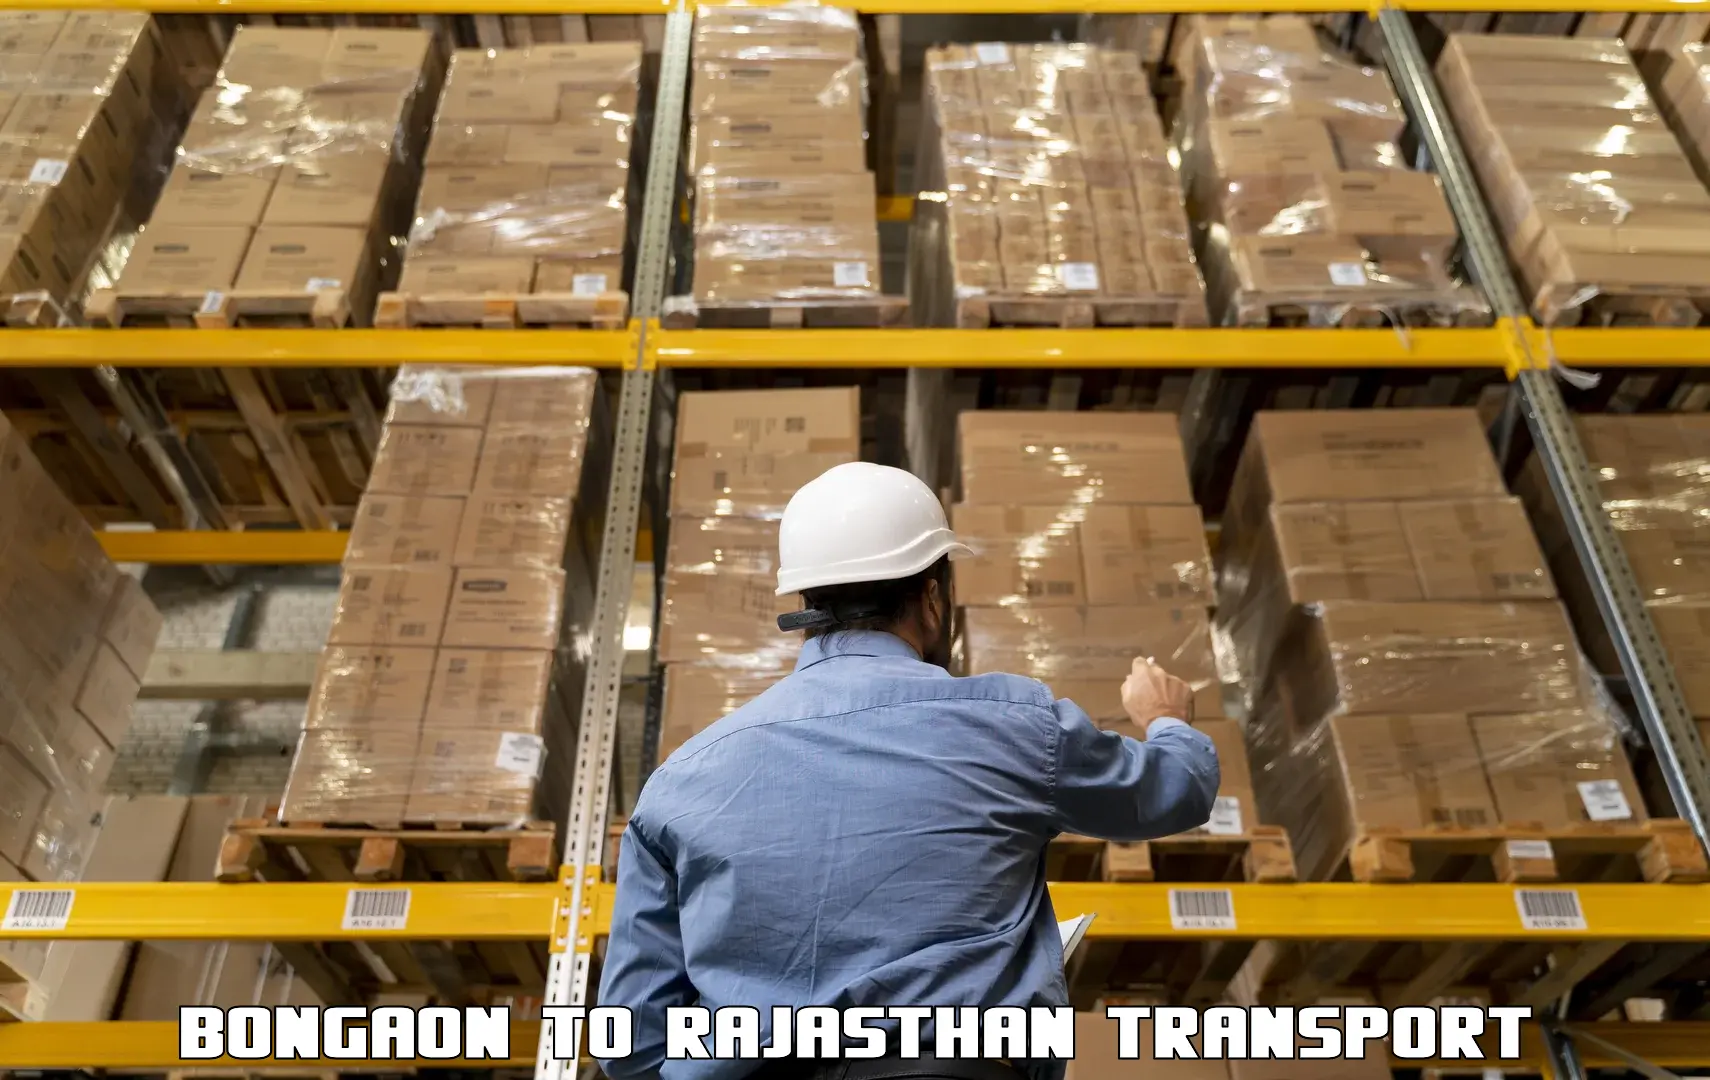 Lorry transport service Bongaon to Jaipur